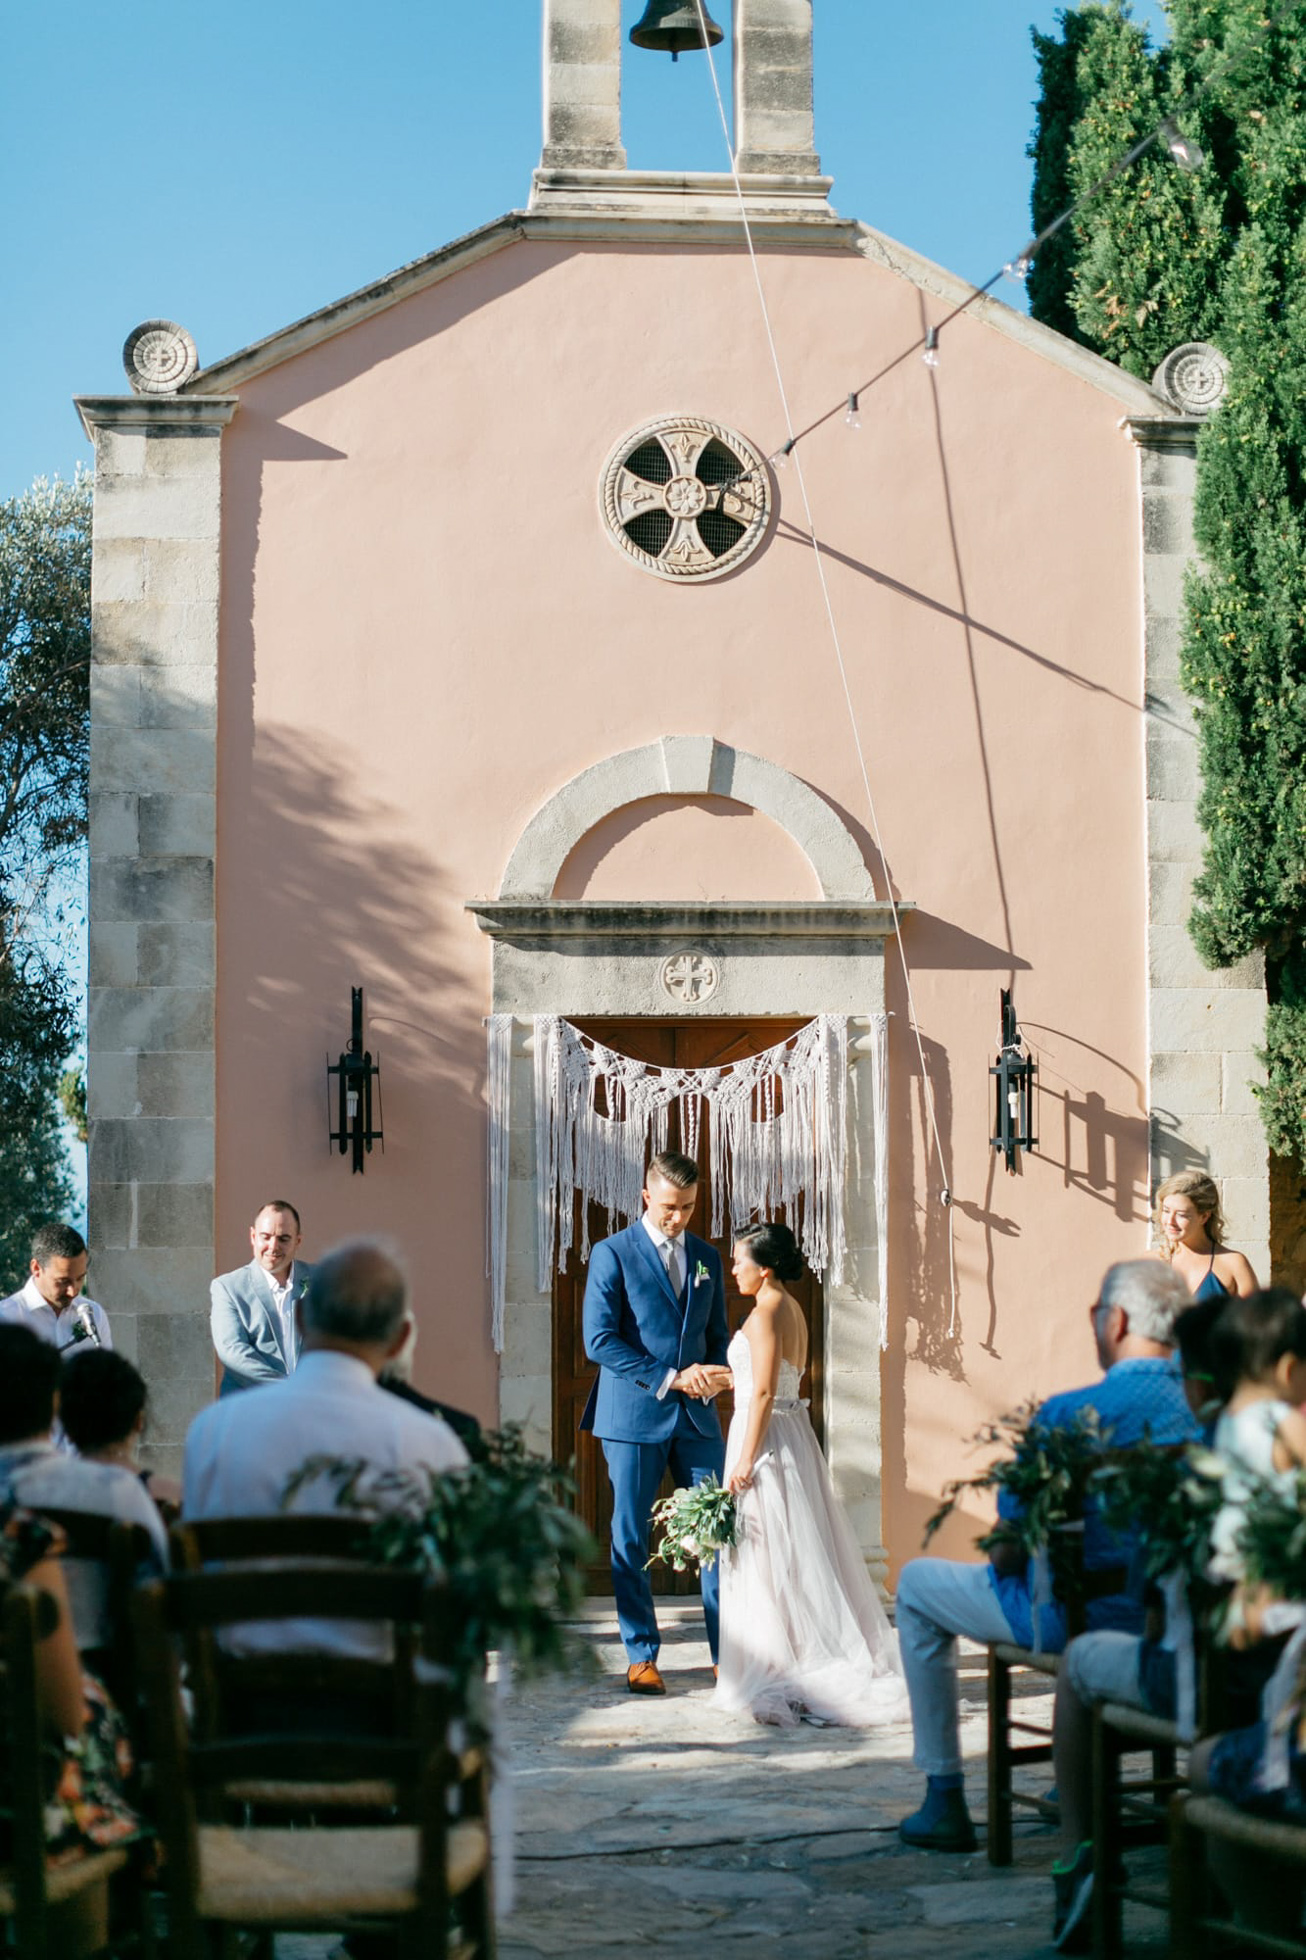 Destination wedding ceremony in Agreco Farms, Grecotel, Crete, Greece.